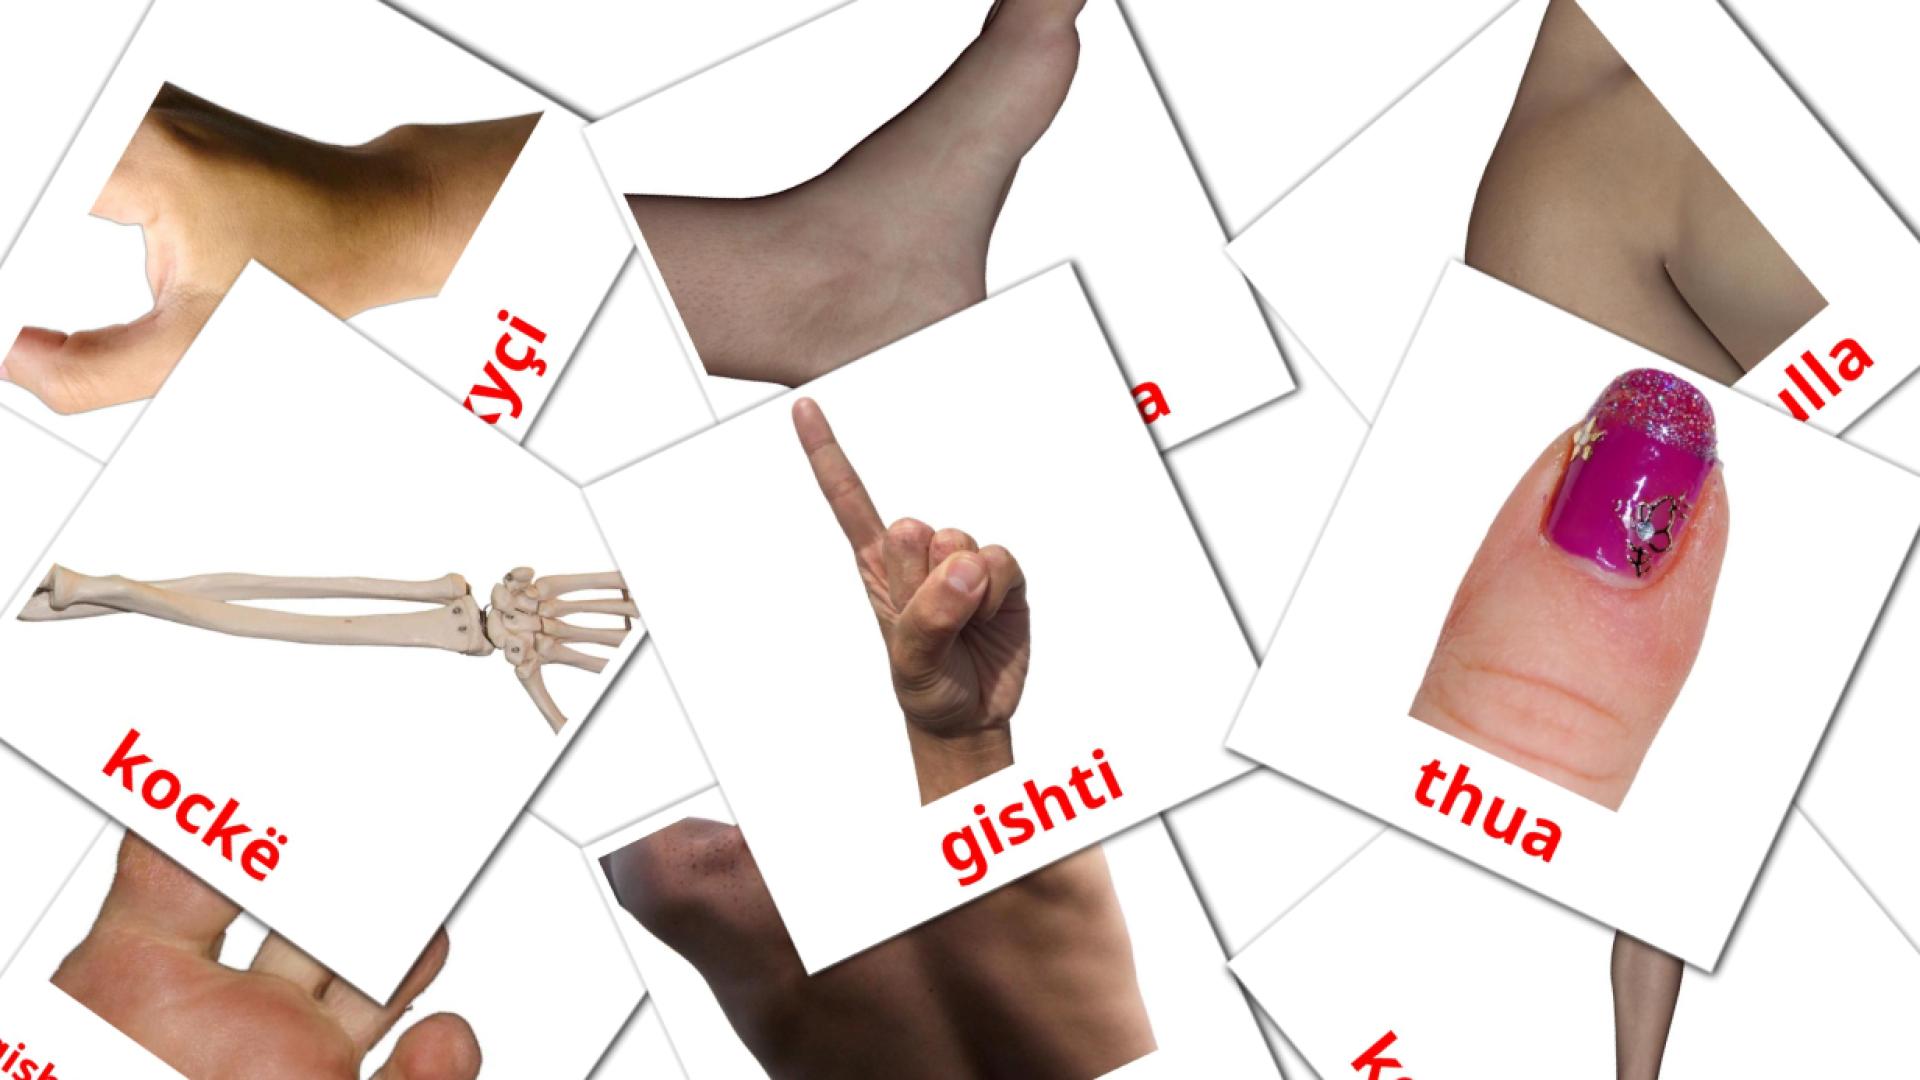 Partes del Cuerpo - tarjetas de vocabulario en albanés